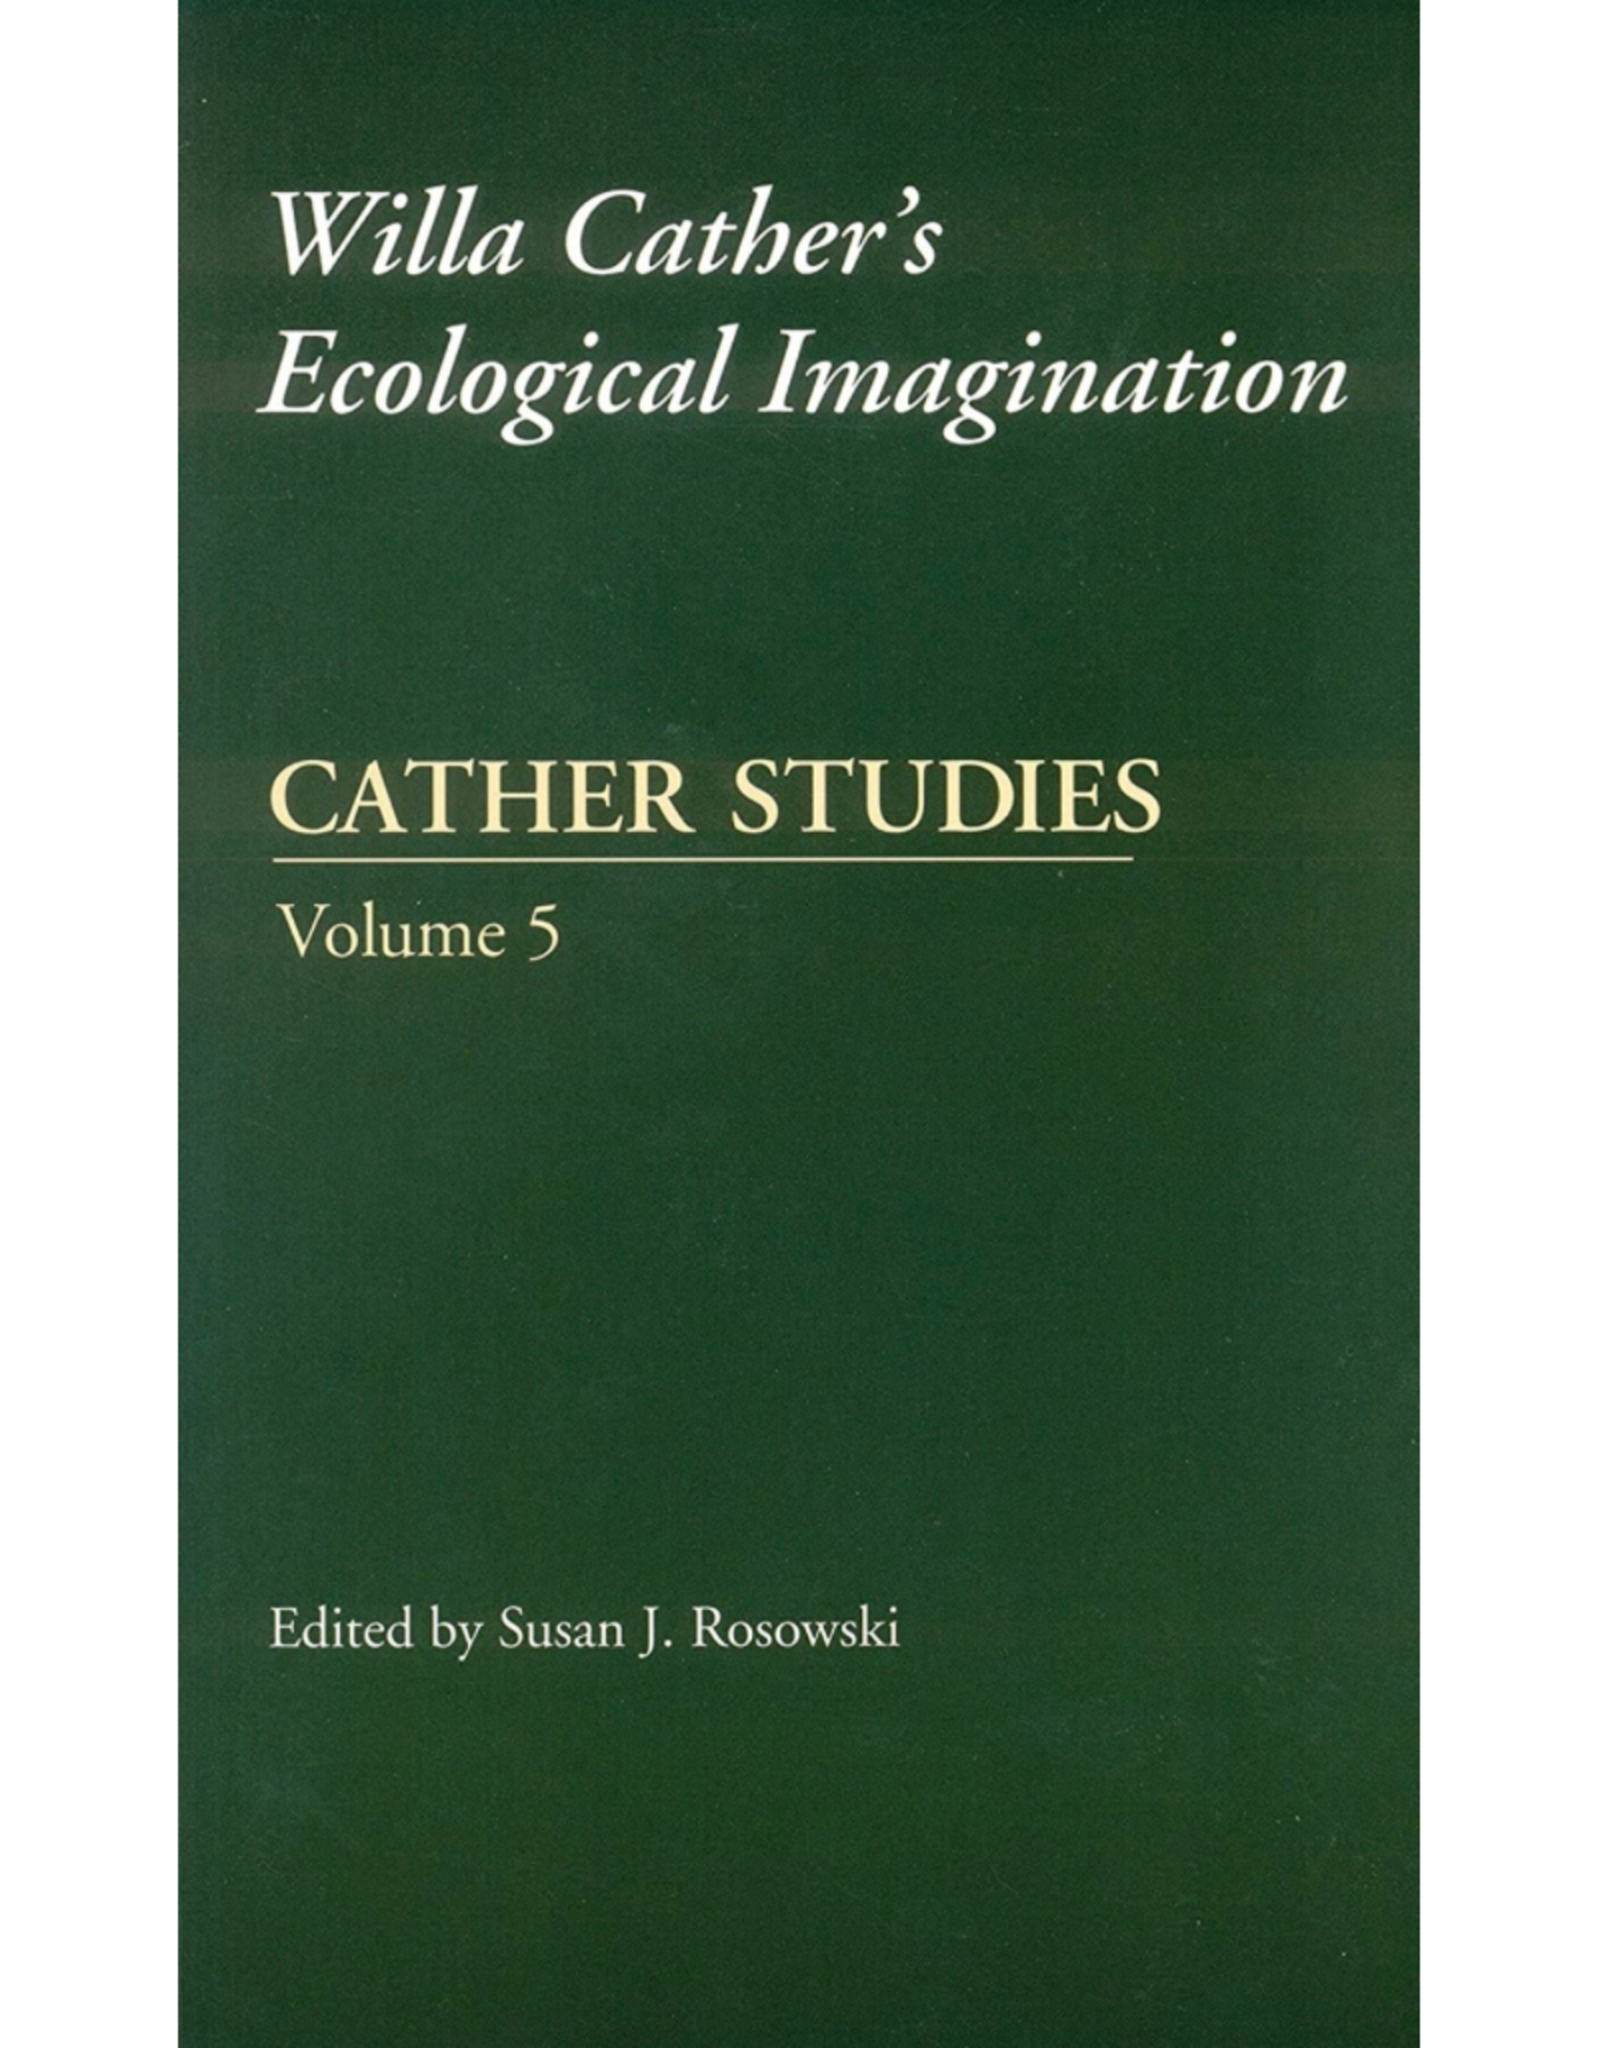 Cather Studies Vol. 5